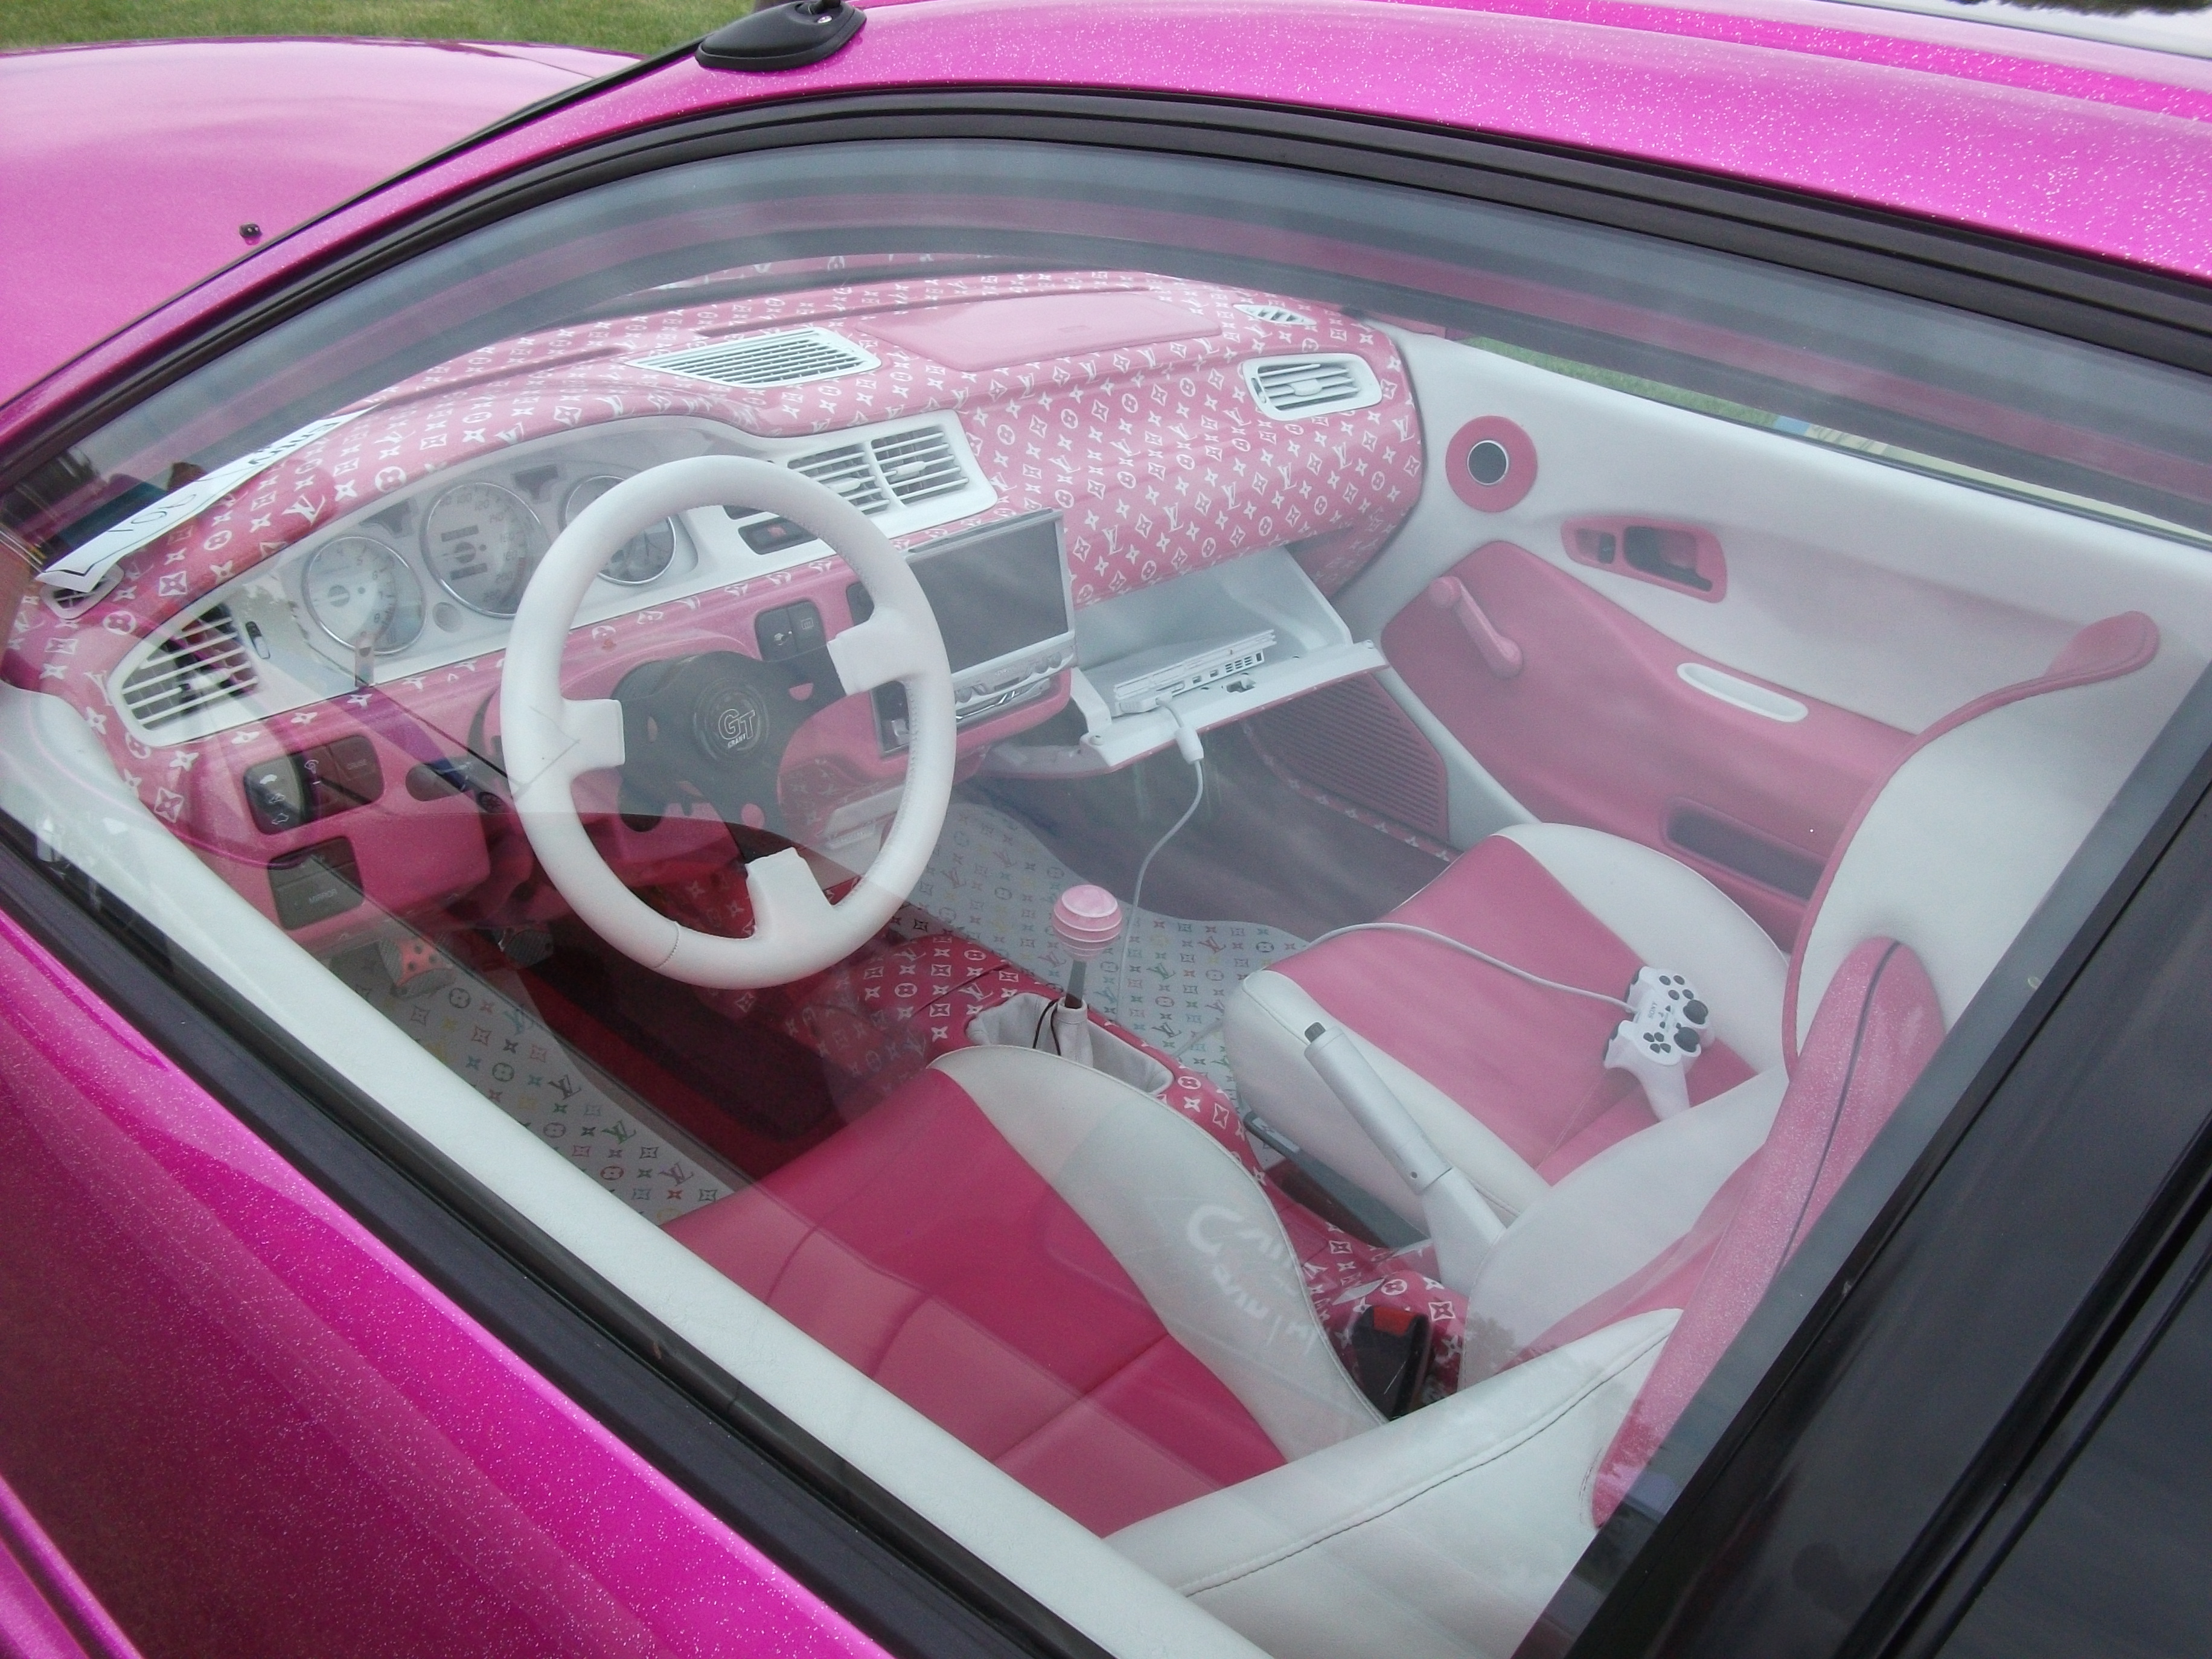 1995 Honda Civic SI Coupe interior | Flickr - Photo Sharing!